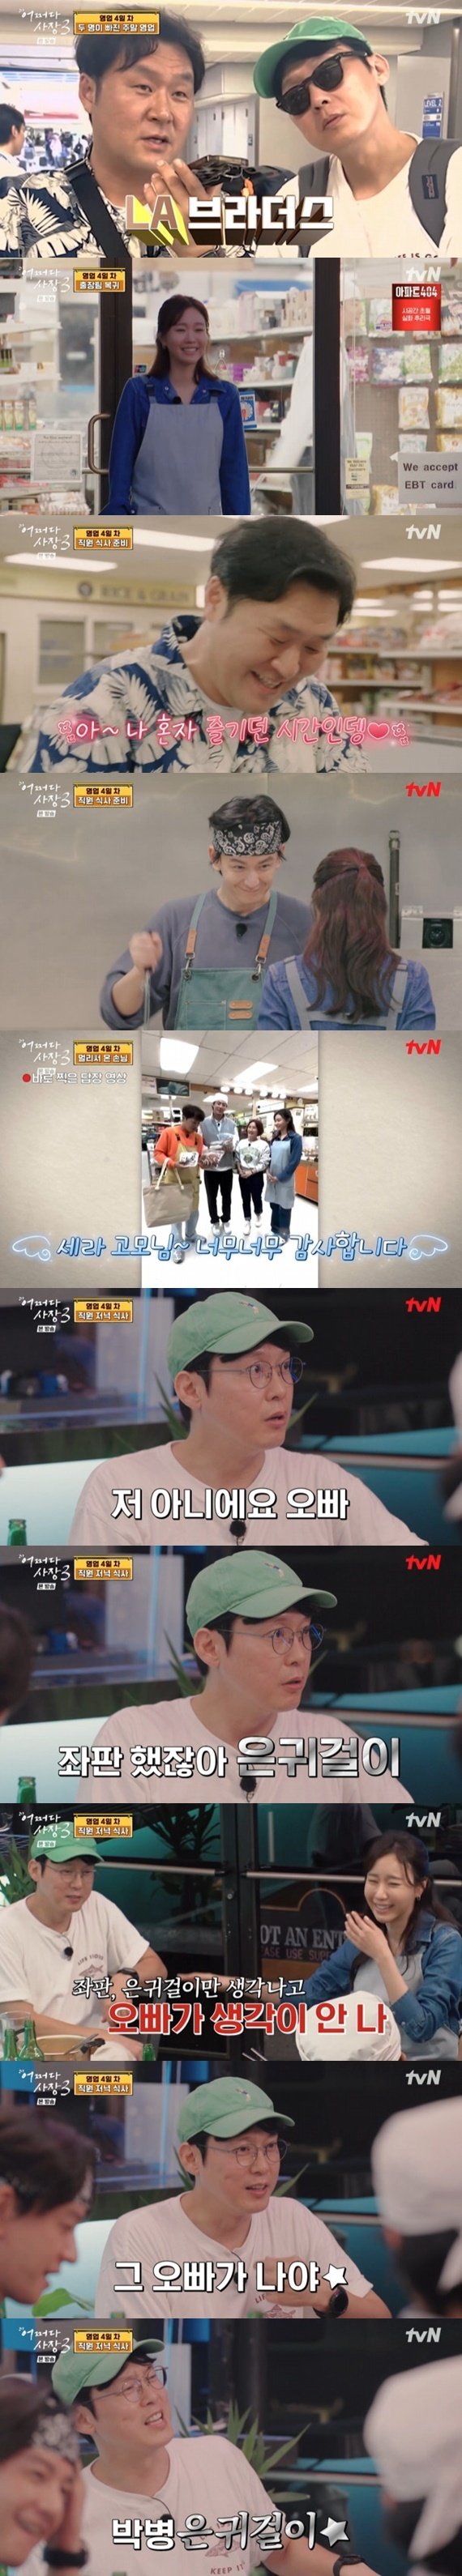 돌아온 박병은, 김아중과 데뷔 전 '좌판 은귀걸이' 인연 [RE:TV]